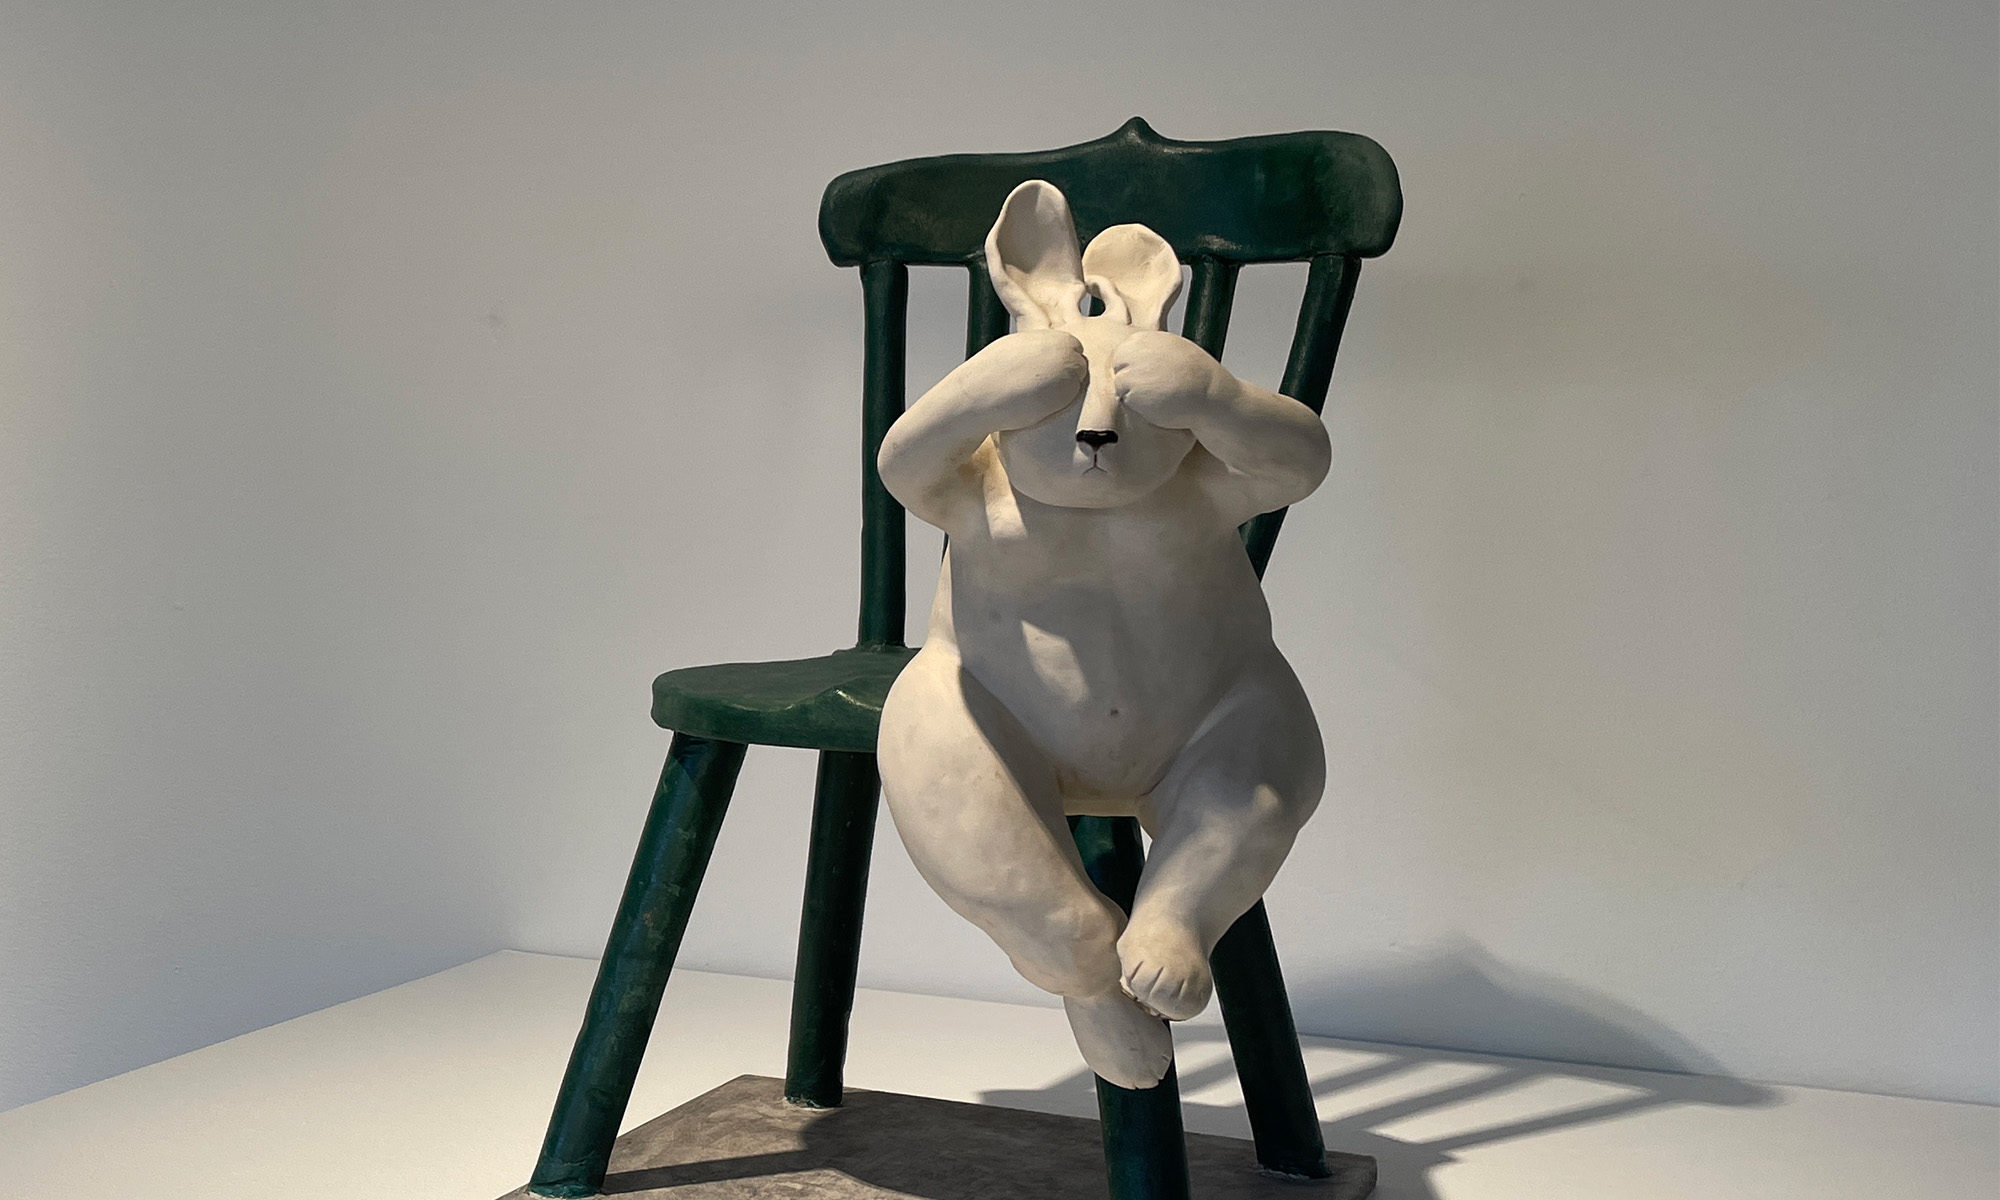 Konstverk föreställande en vit kanin som hoppar från en grön stol i trä